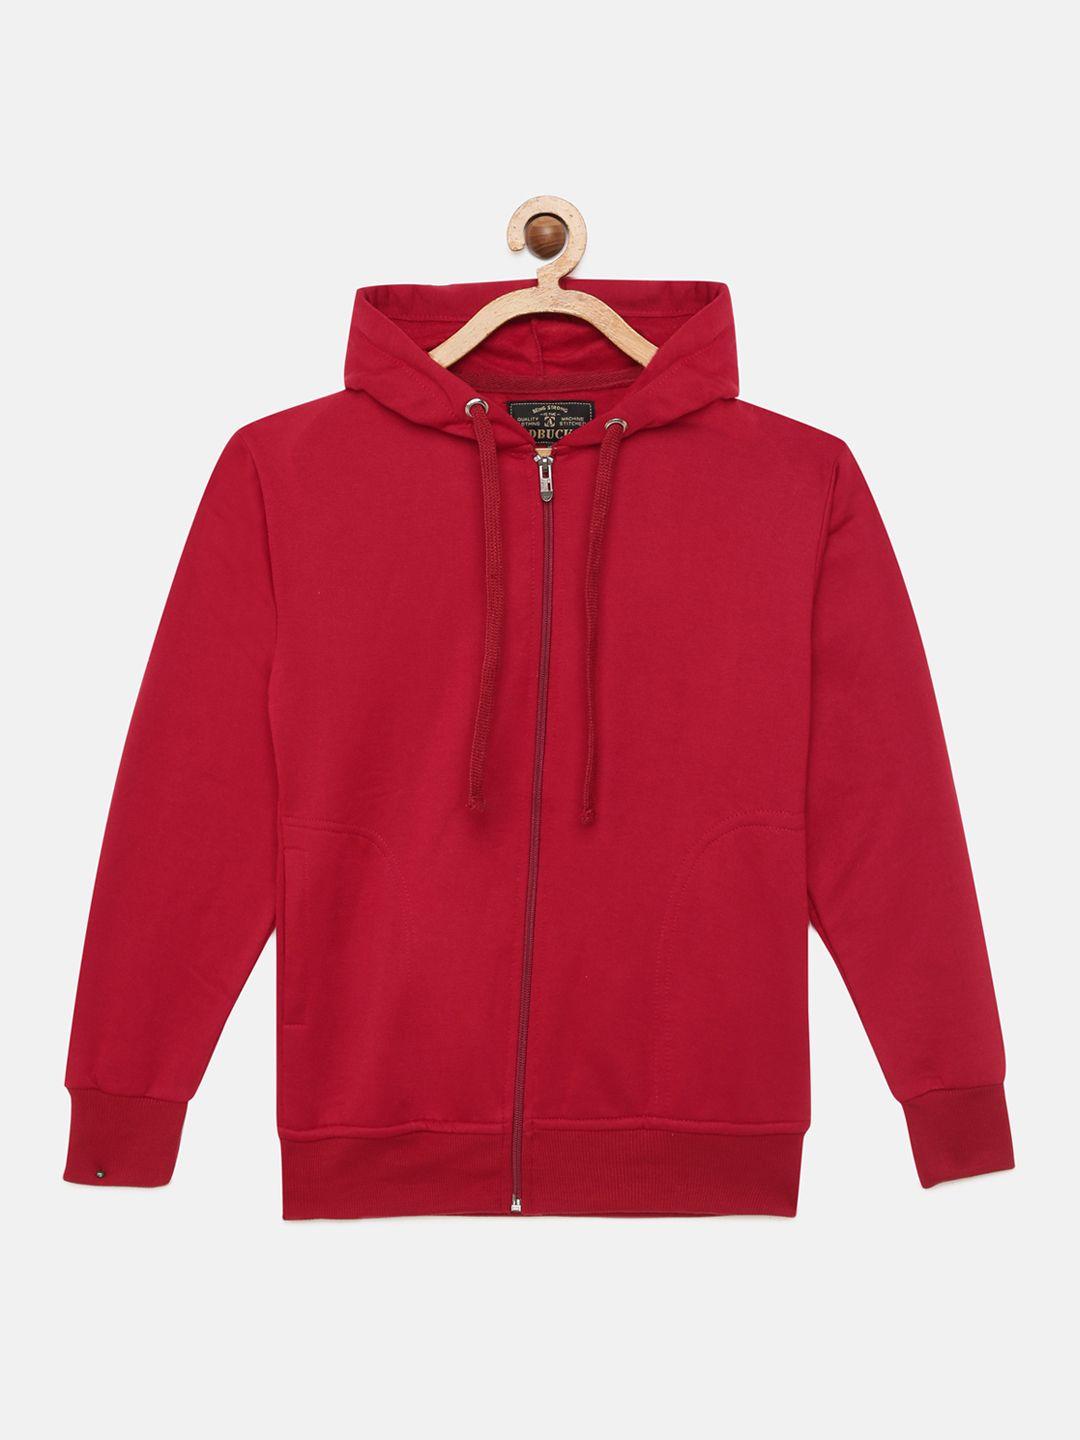 adbucks-boys-maroon-solid-hooded-sweatshirt